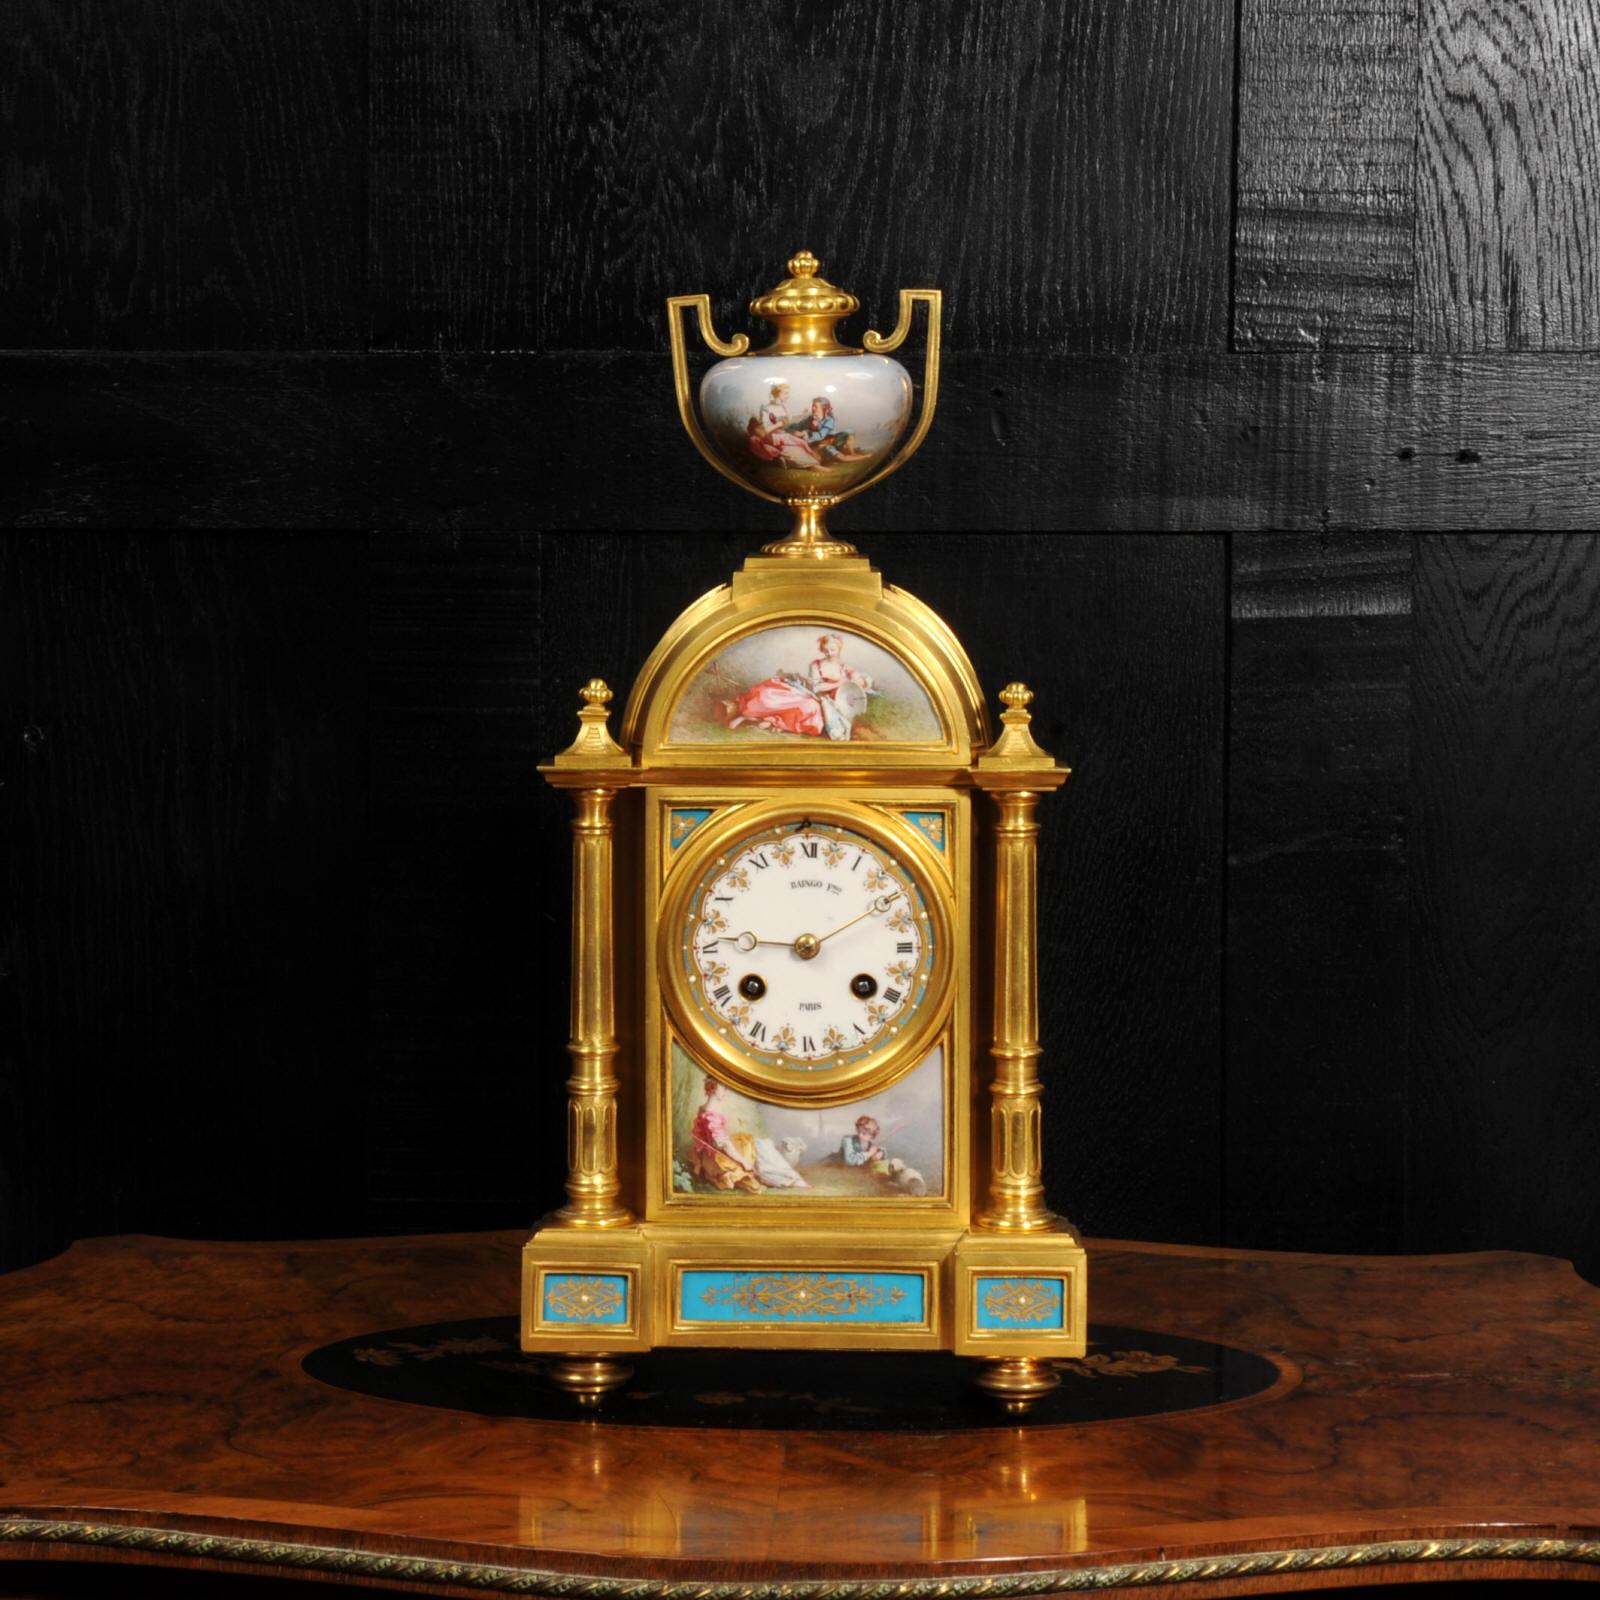 Eine schöne und frühe Uhr, das Gehäuse von Henri Picard aus Paris und das Uhrwerk von Raingo Frères. Sie ist wunderschön aus Ormolu (quecksilberfeuervergoldeter Bronzedoré) gefertigt und mit exquisit bemaltem Porzellan im Stil von Sèvres mit einem